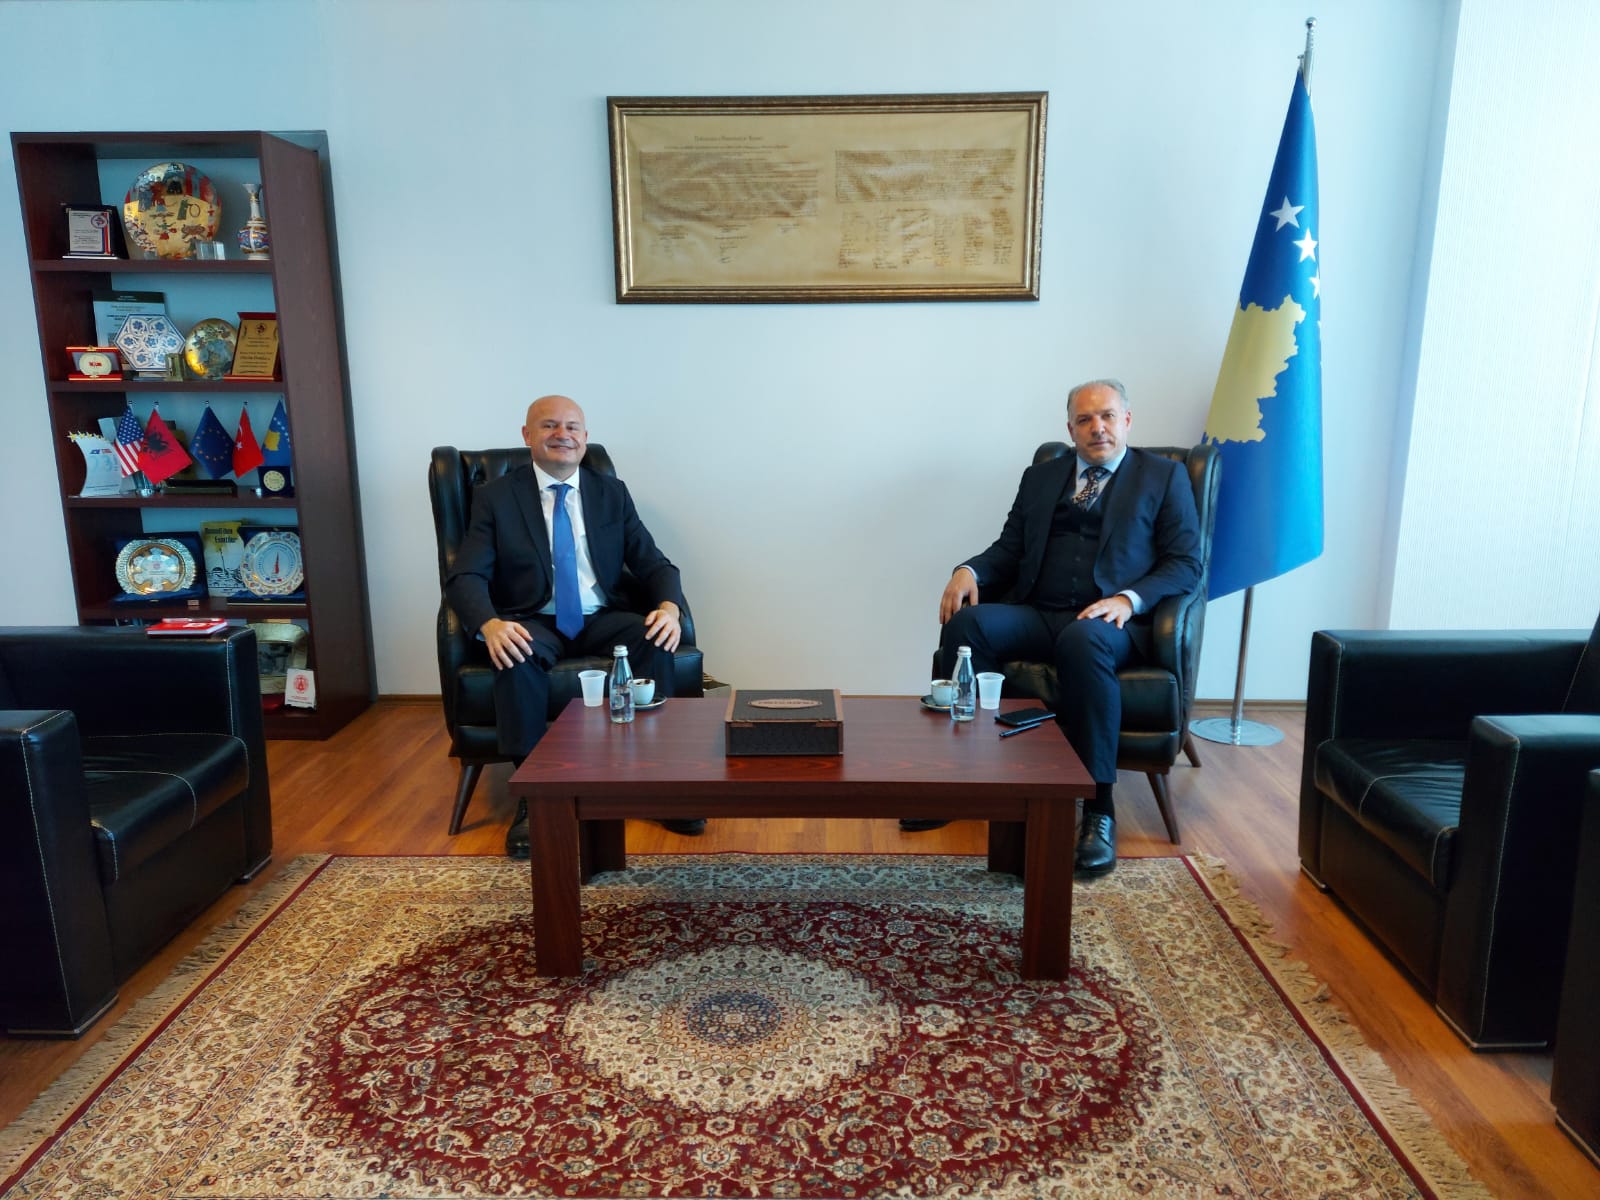 Ministri i Zhvillimit Rajonal z.Fikrim Damka,  ka pritur në takim Konsullin e Përgjithshëm të Republikës së Turqisë në Prizren z. Serdar Özaydın